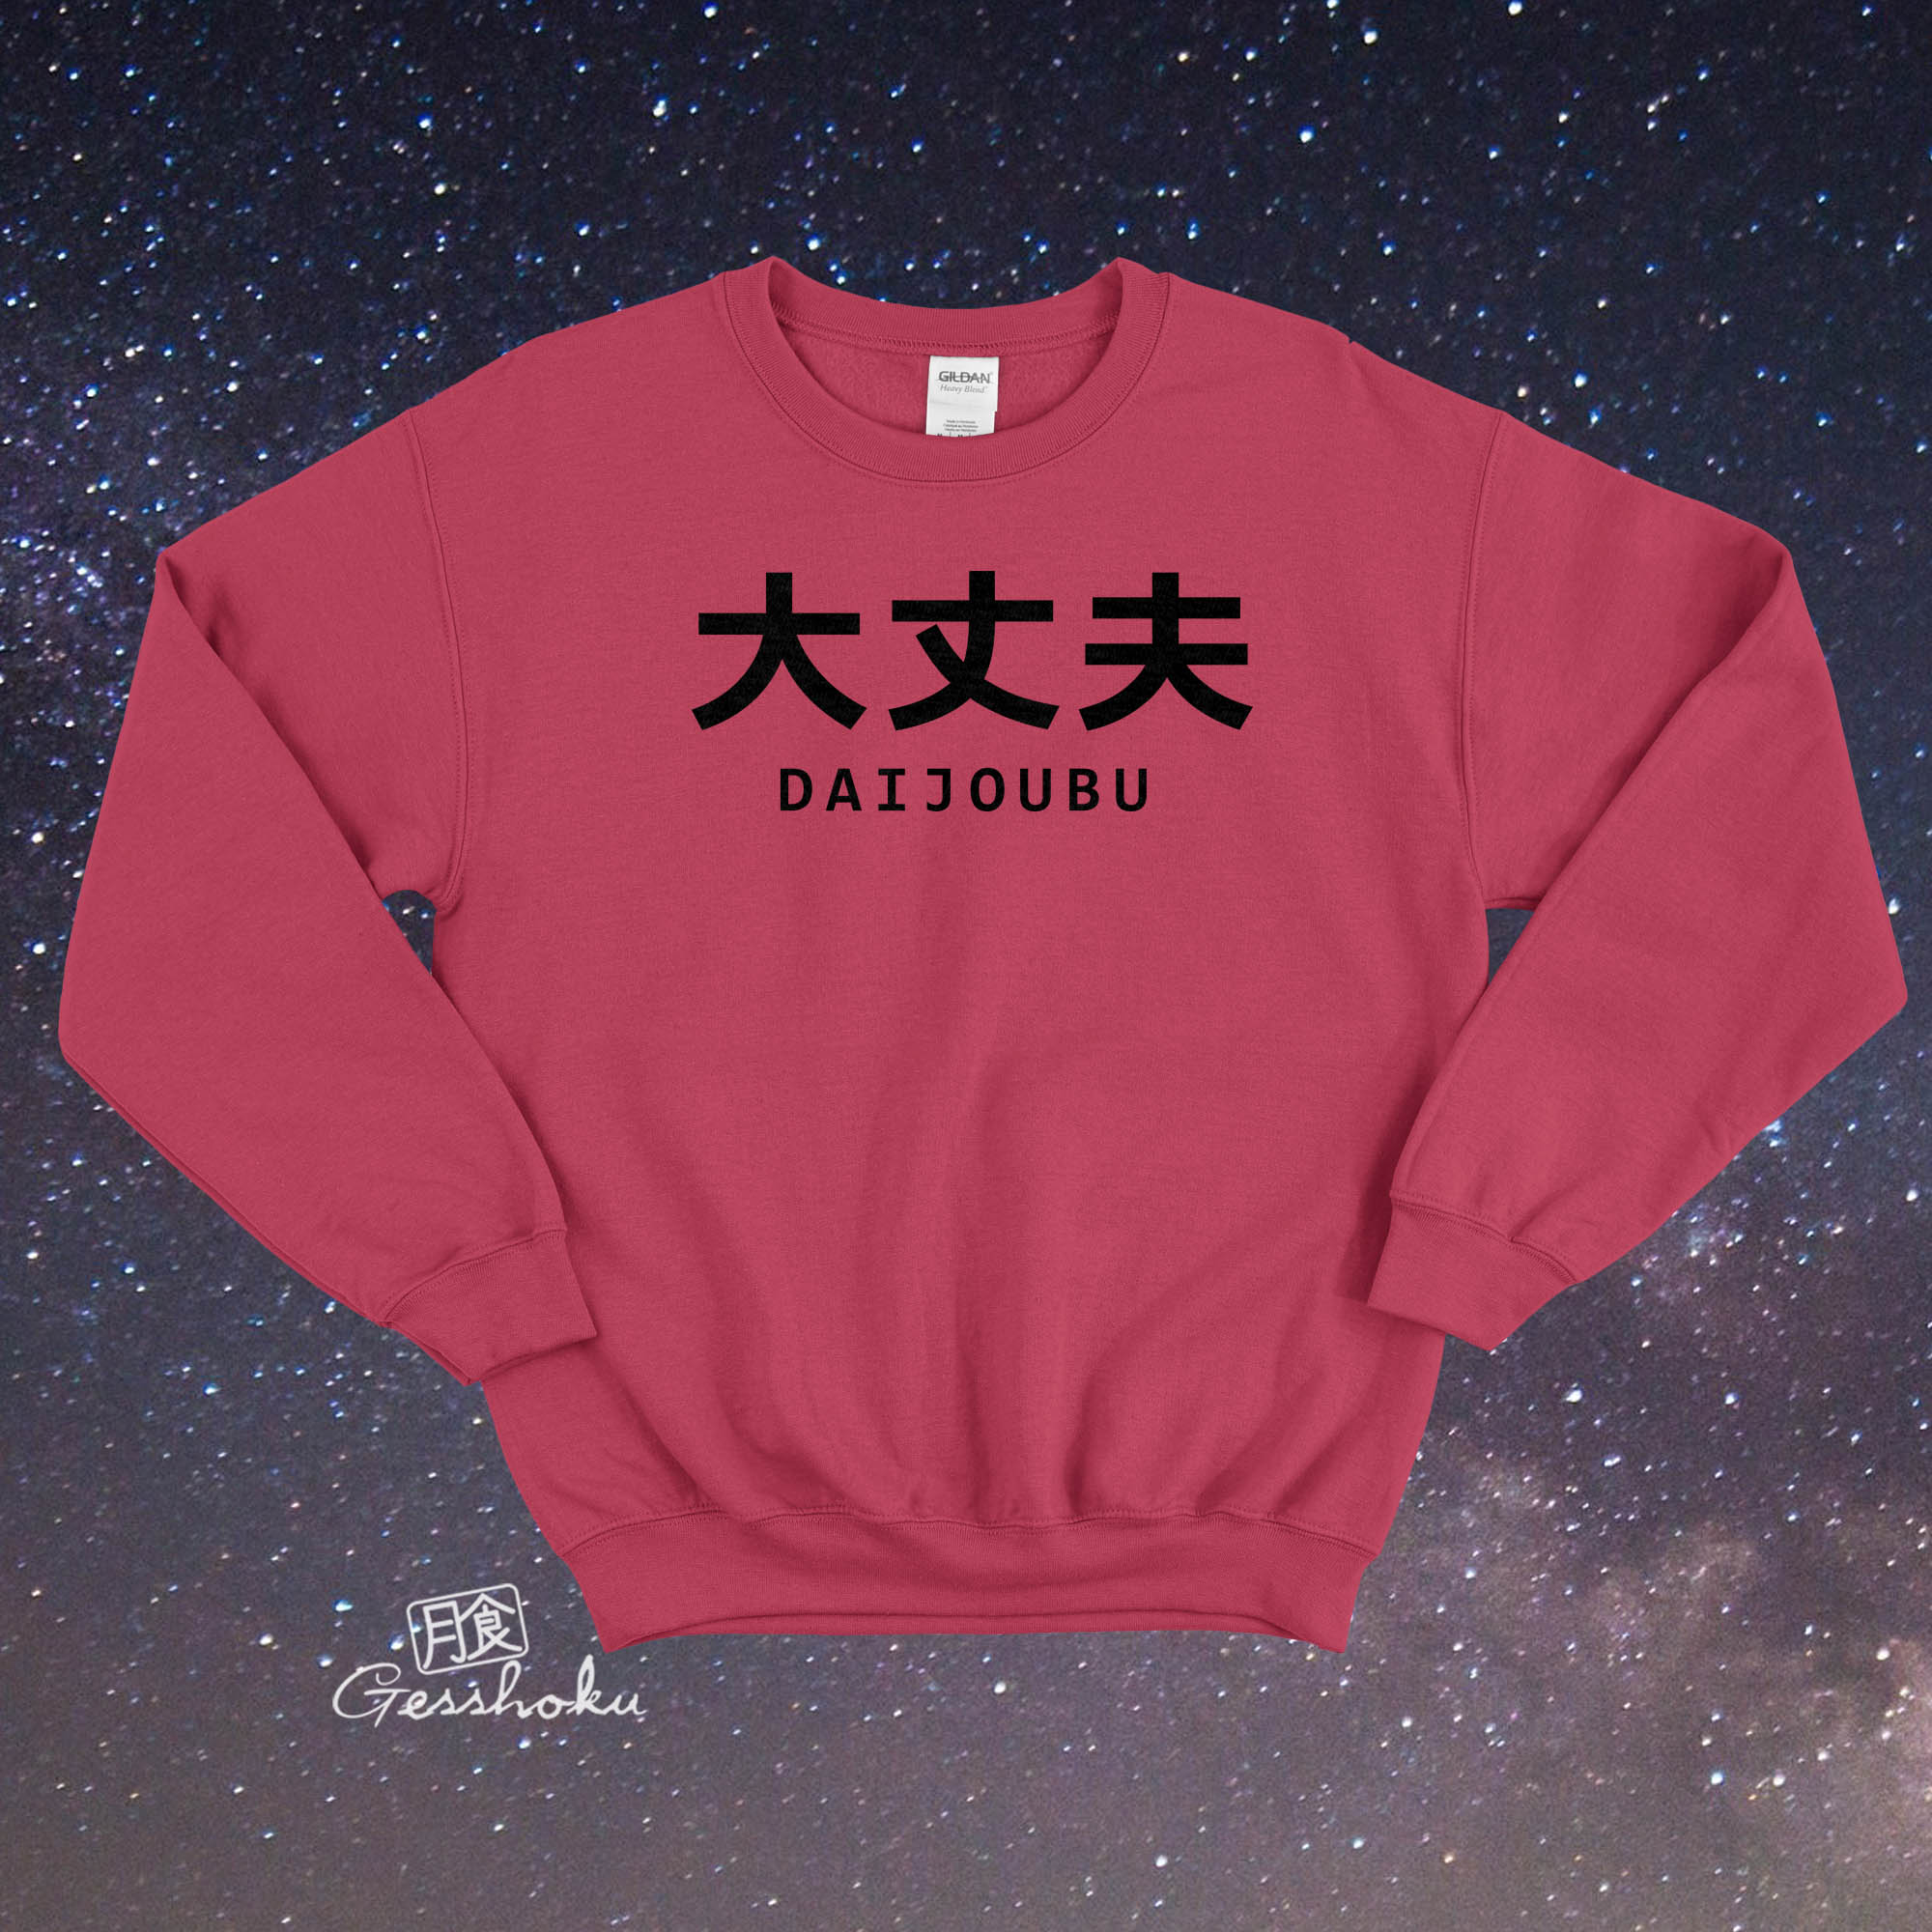 Daijoubu "It's Okay" Crewneck Sweatshirt - Hot Pink